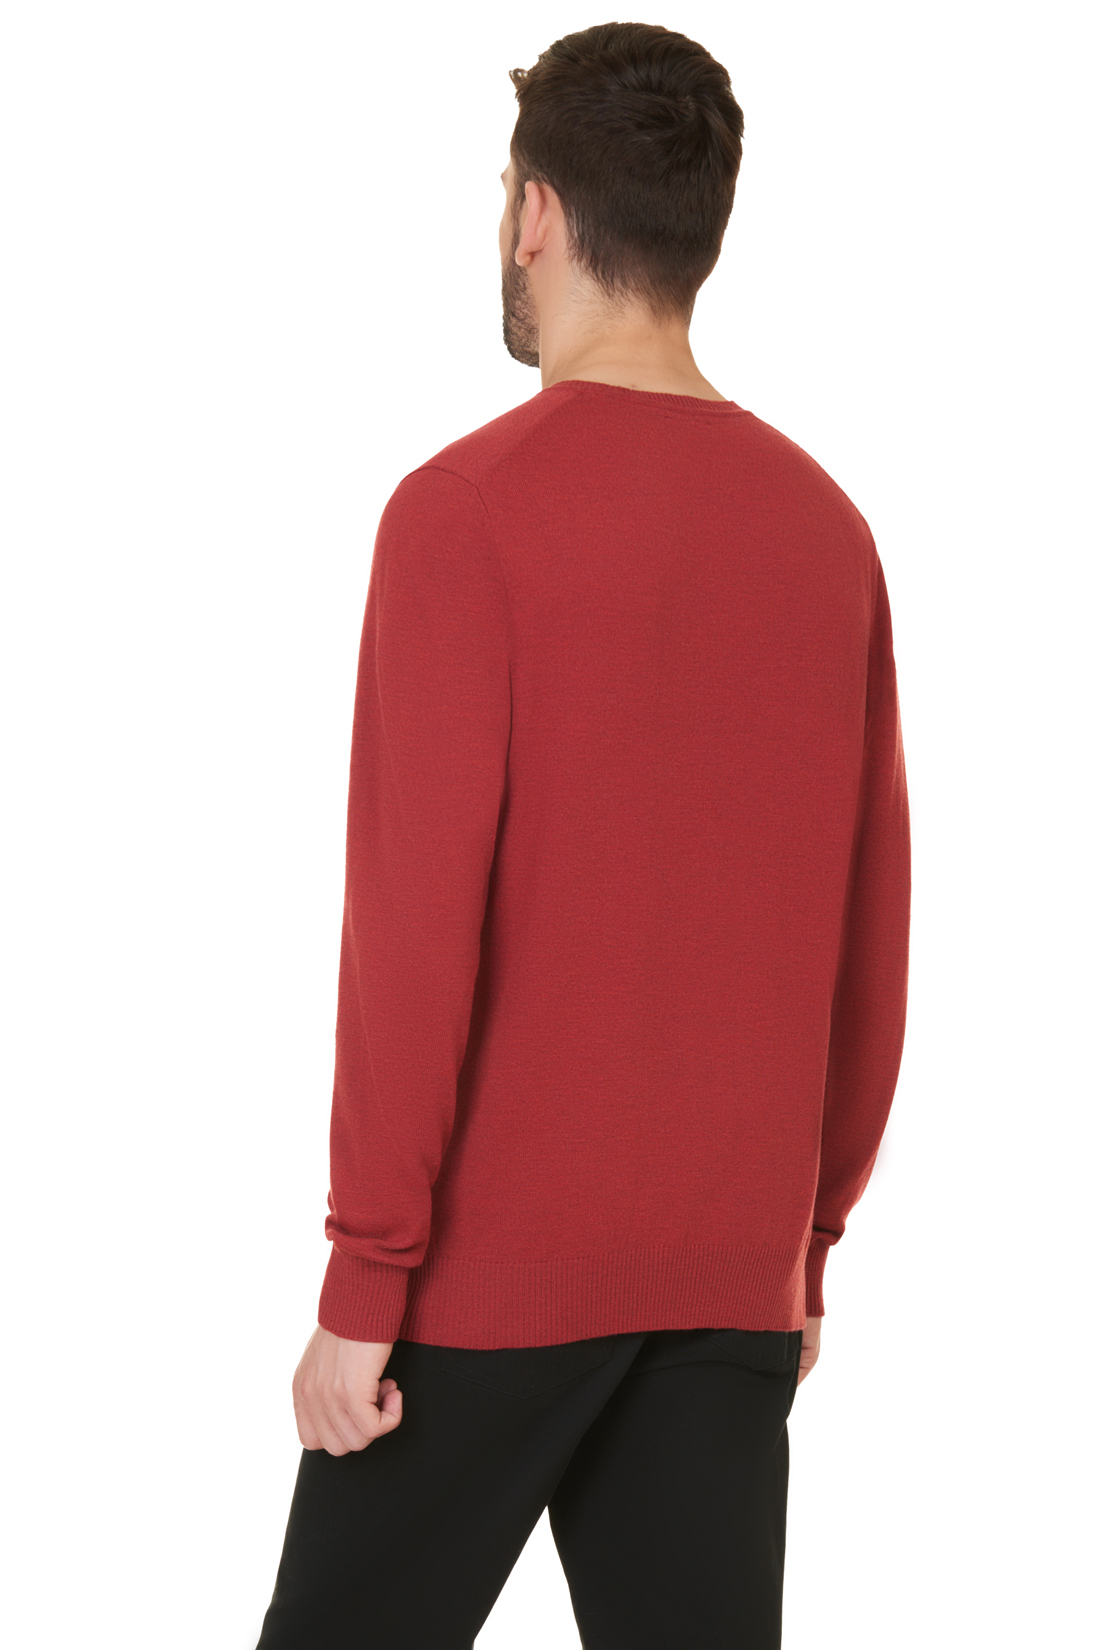 Базовый пуловер (арт. baon B637703), размер XXL, цвет red melange#красный Базовый пуловер (арт. baon B637703) - фото 2